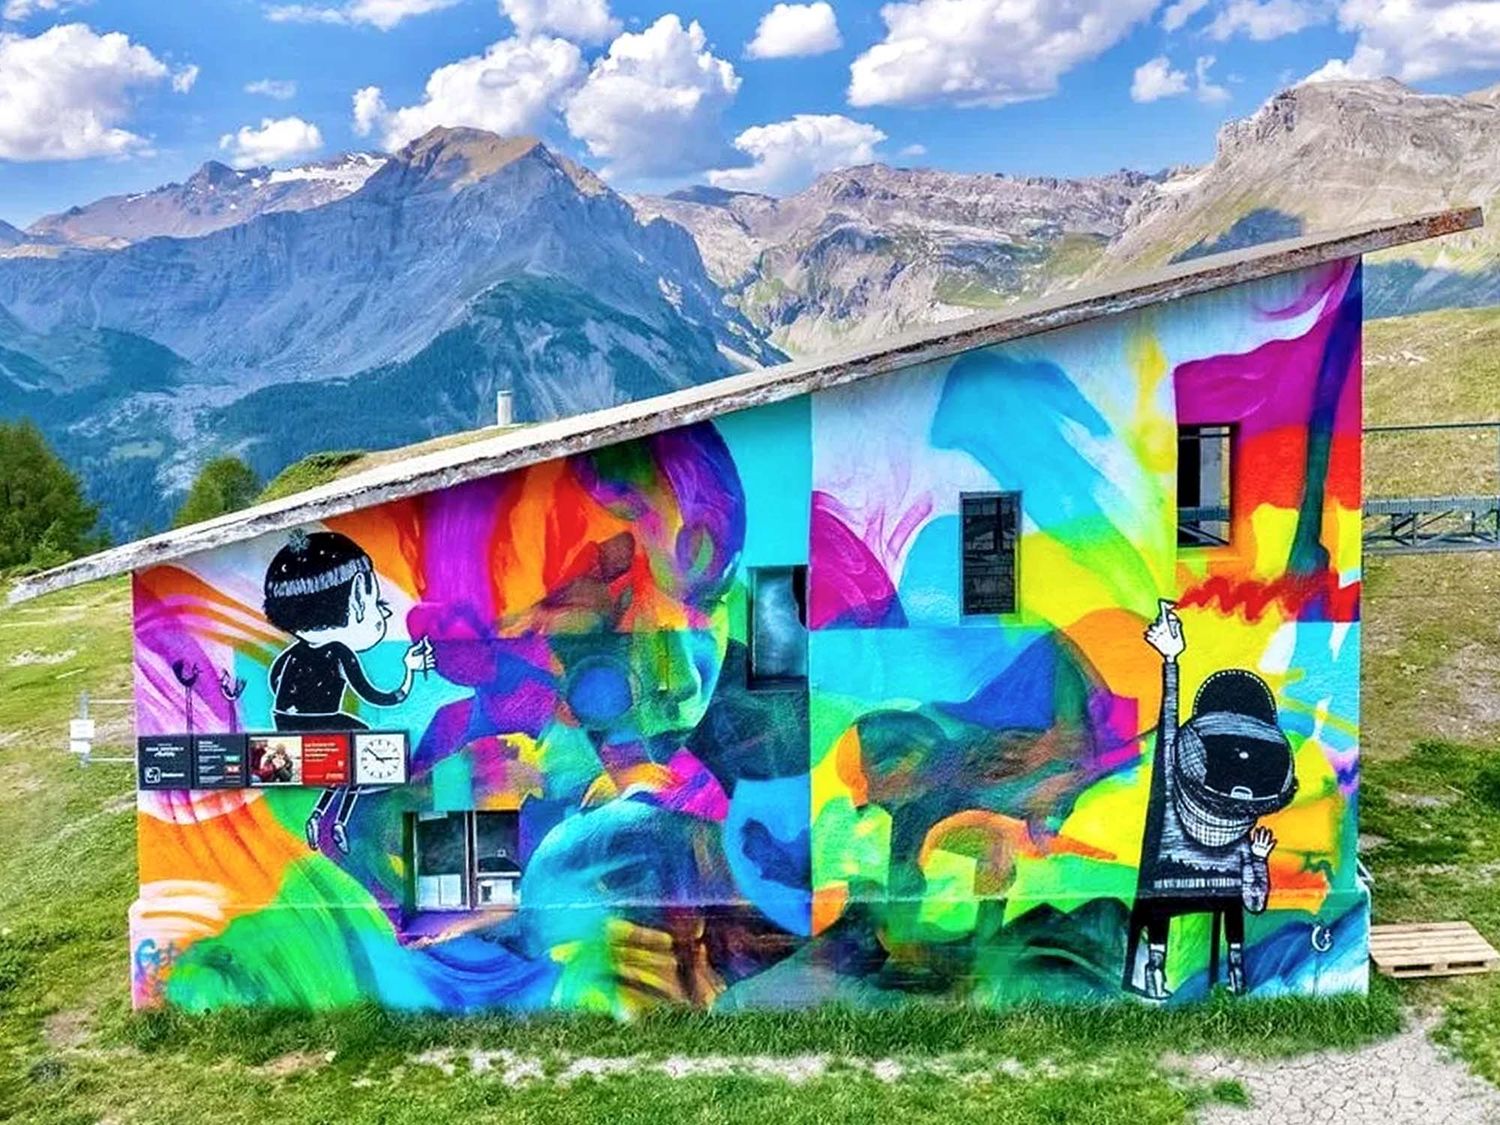 Qualifié de plus haut festival de Street Art au monde, le Vision Art Festival continue de nous surprendre chaque année avec son environnement à couper le souffle (©V. Edmond Louis / @Gera 1 + Alex Senna).